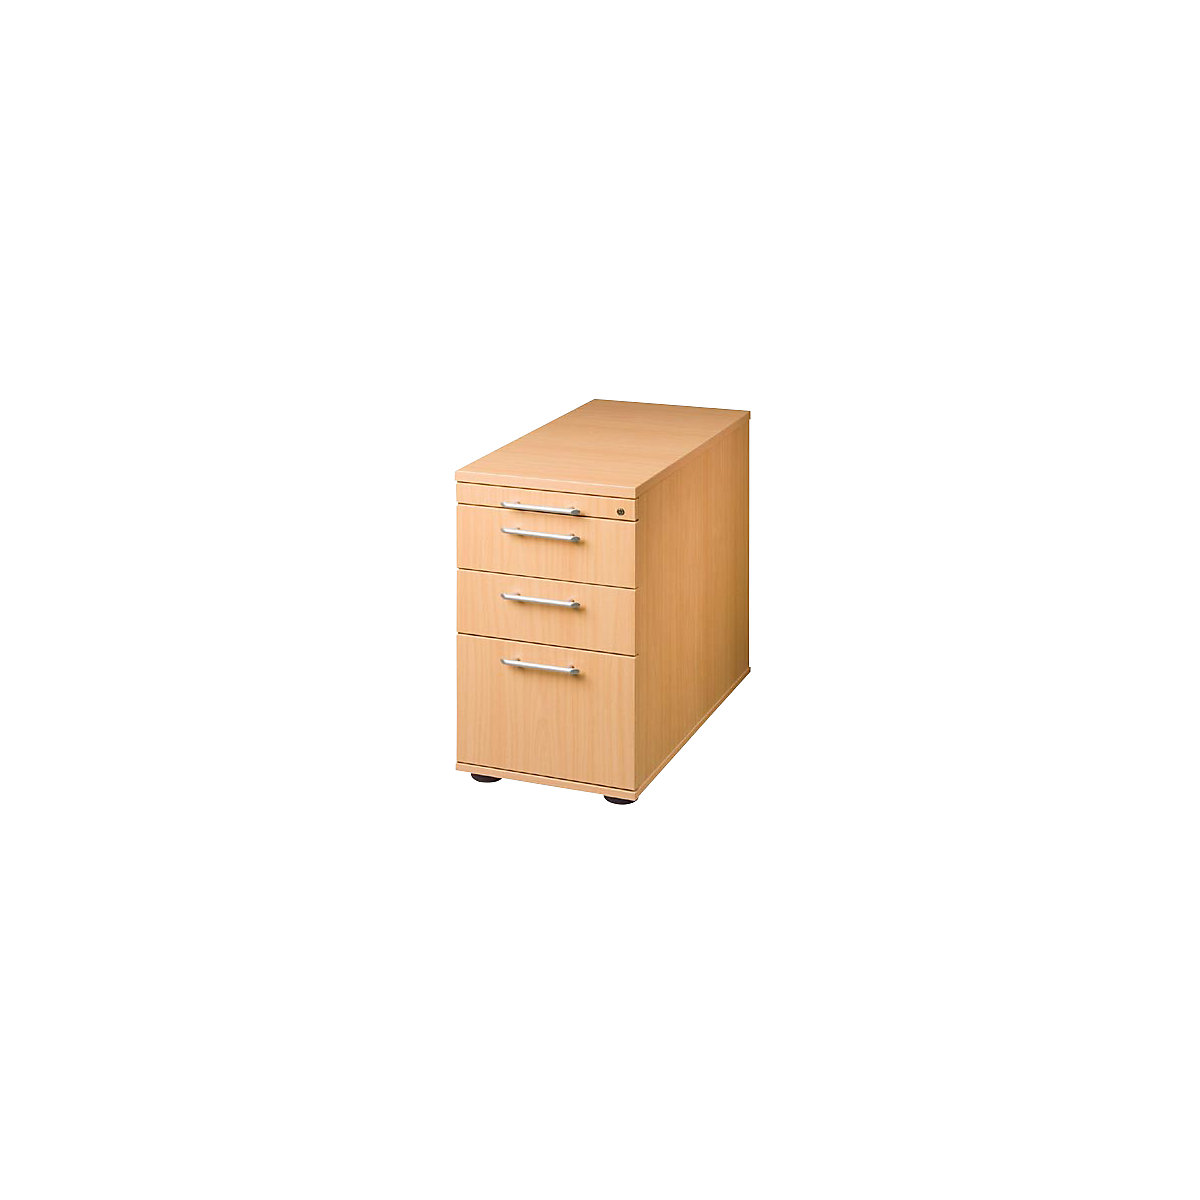 Standcontainer, höhenverstellbar, 1 Utensilienschub, 2 Schubladen, 1 Hängeregistratur, Buche-Dekor-8